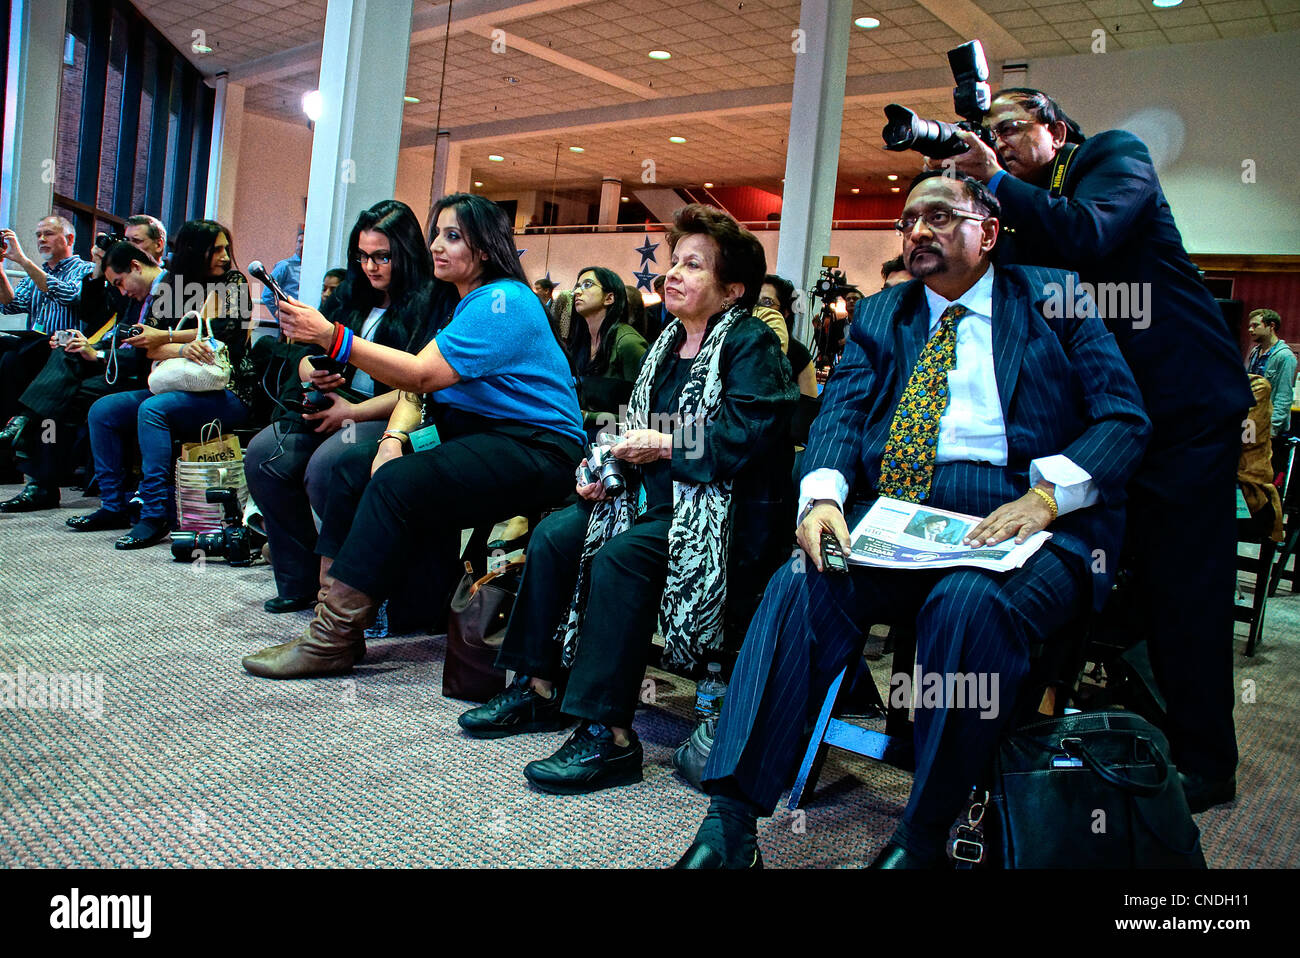 New Haven, CT USA--fragt Medien Bollywood Film Superstar Shah Rukh Khan Fragen während einer Pressekonferenz, wie er bereit, ein volles Haus am Shubert Theater in New Haven-Fans begrüßen. Shah Rukh Khan empfing die Chubb-Stipendium an der Yale University. Stockfoto